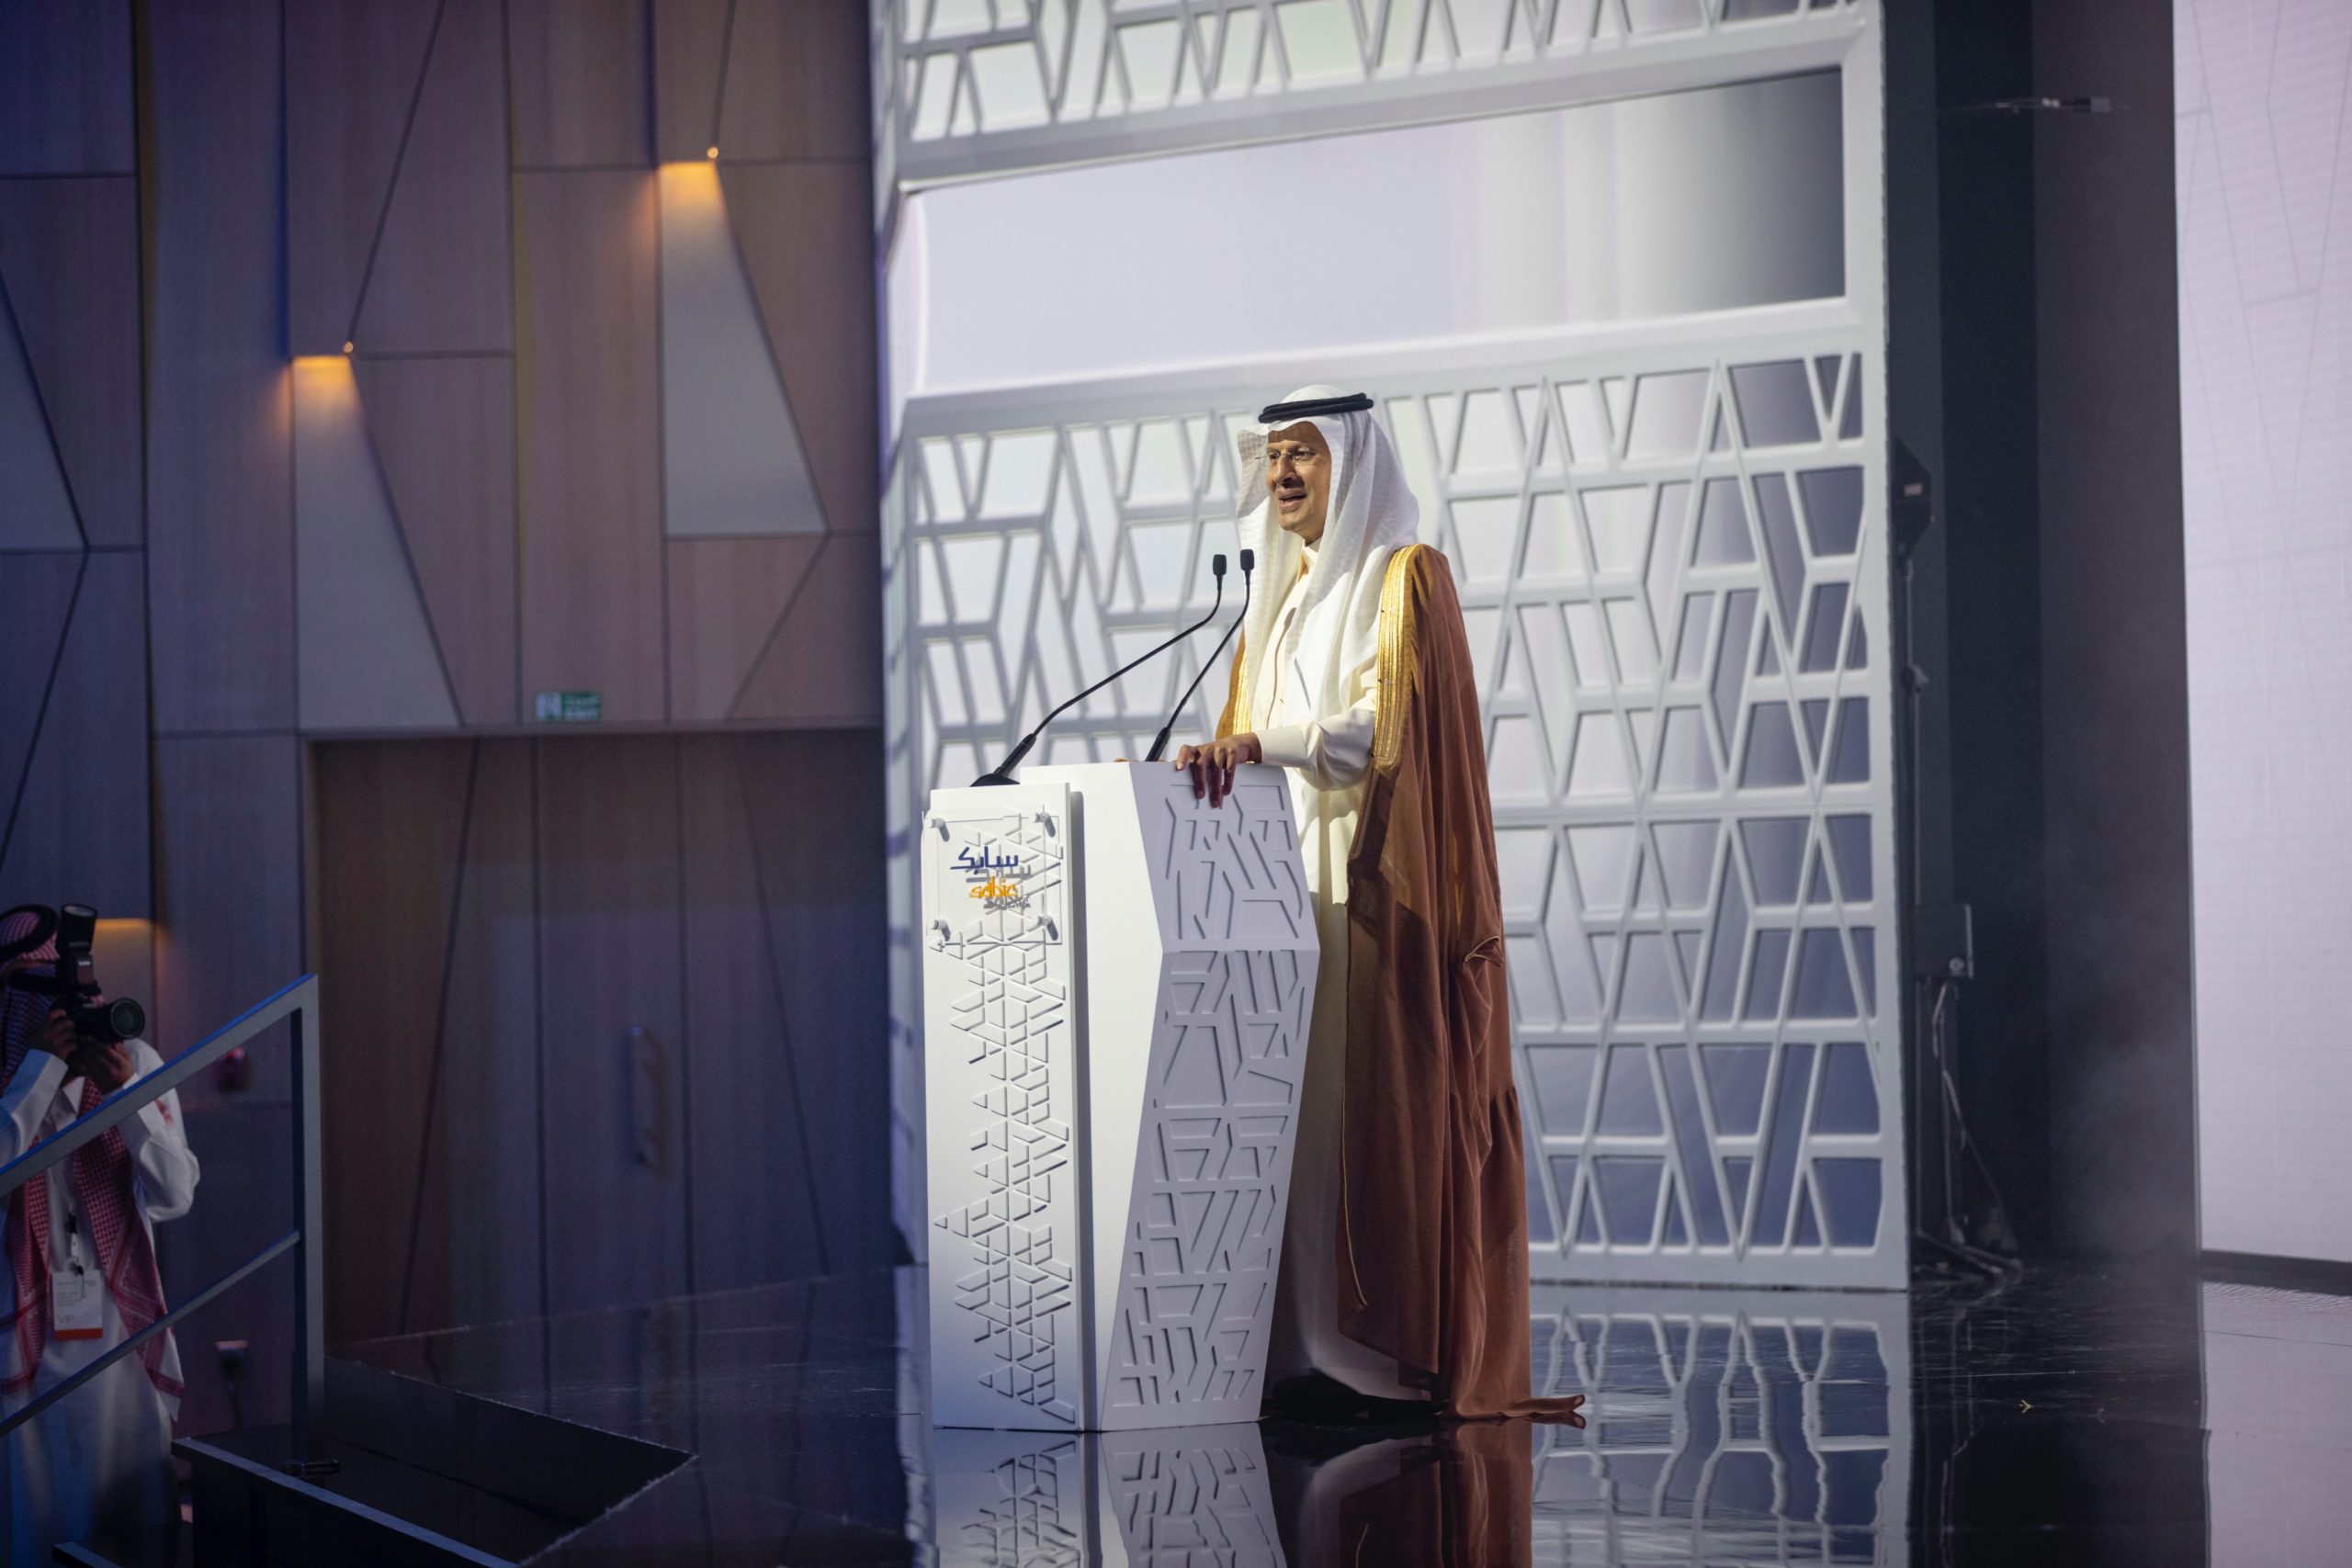 وزير الطاقة السعودي الأمير عبدالعزيز بن سلمان يلقي كلمته في حفل افتتاح مبنى سابك الجبيل